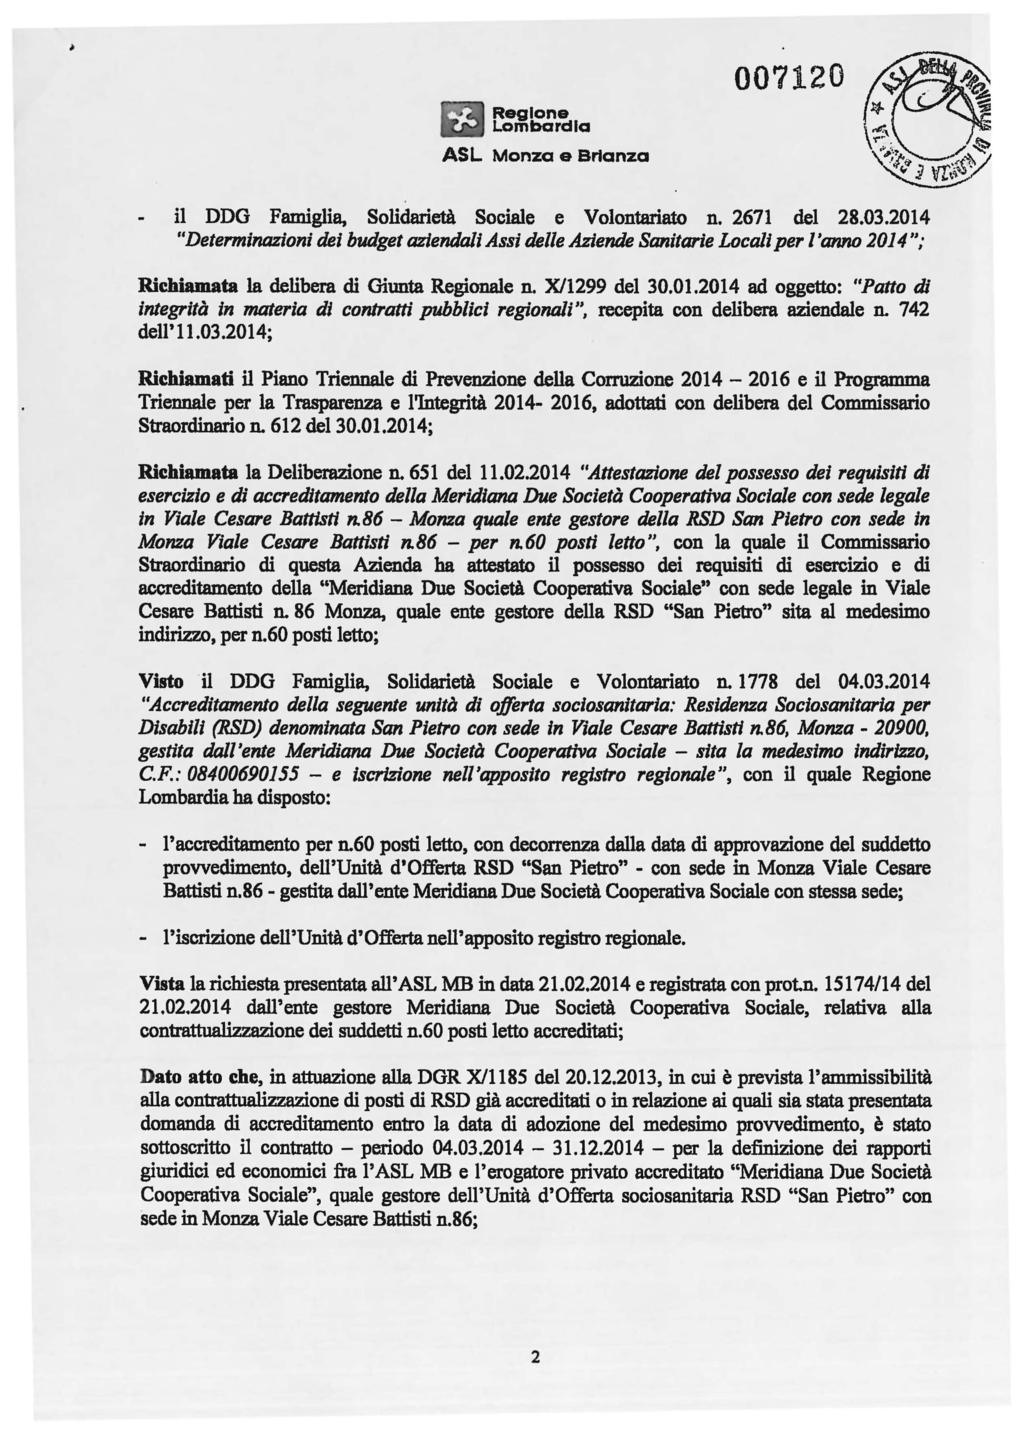 lombardia 007120 il DDG Famiglia, Solidarietà Sociale e VoIontariato n. 2671 del 28.03.